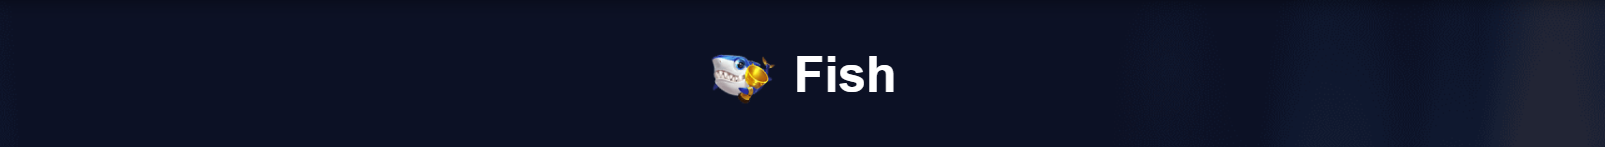 Fish_banner